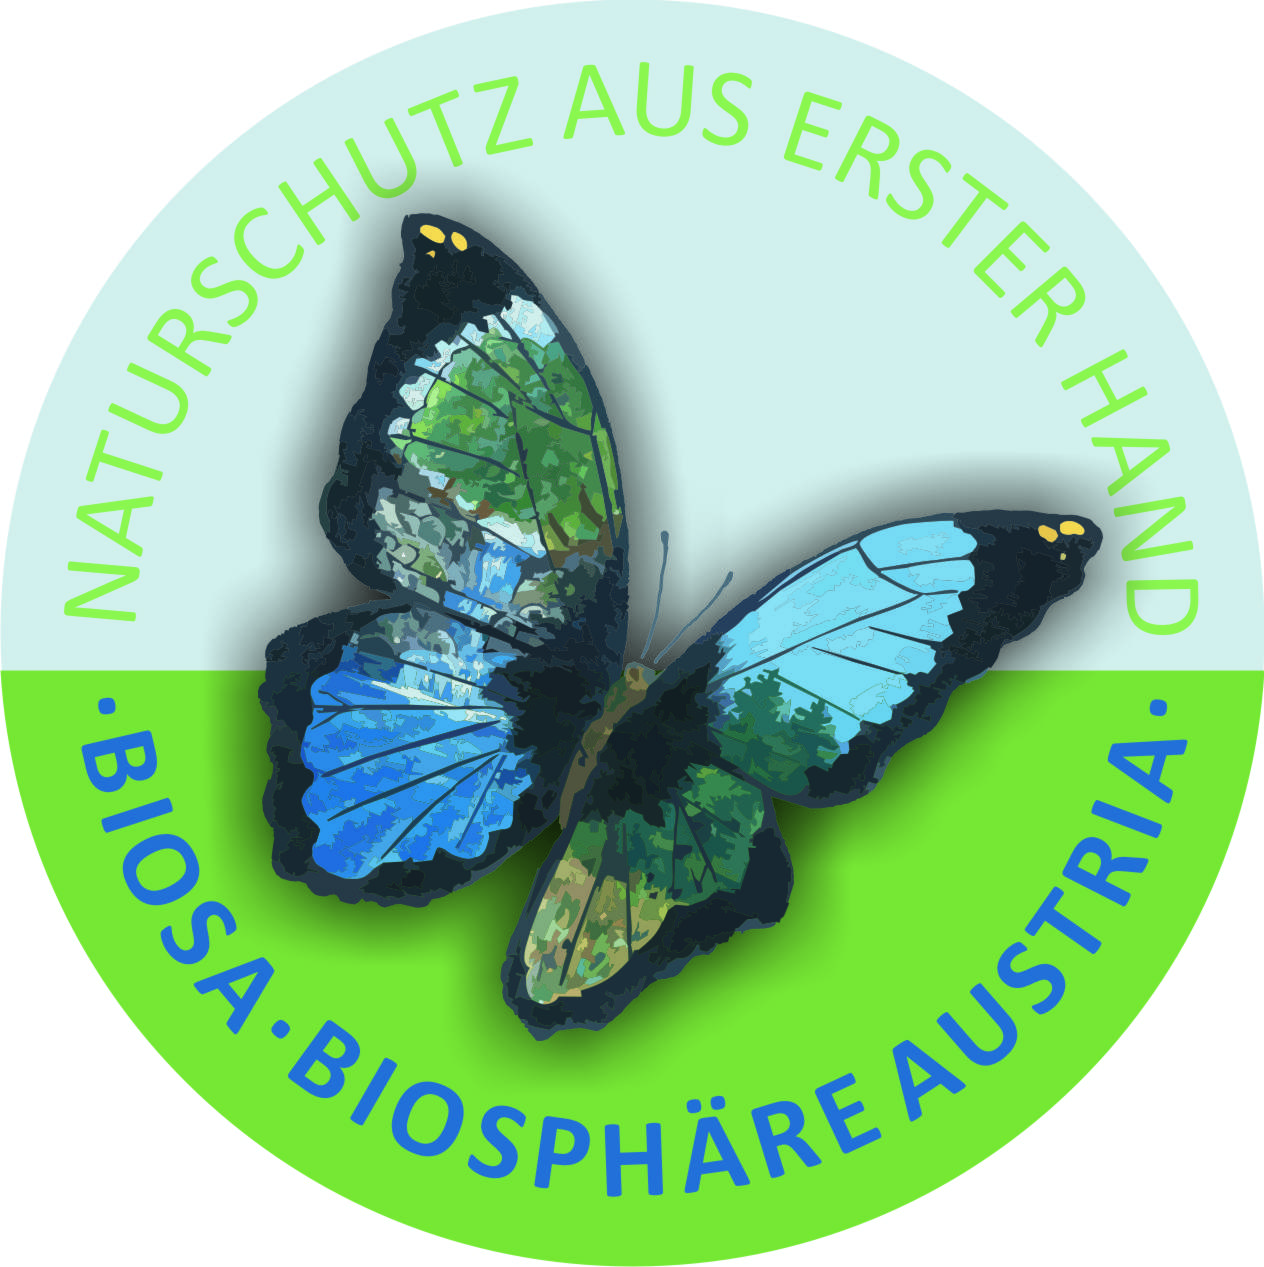 Bereitgestellt von unserem Partner BIOSA - Biosphäre Austria, dem Verein für dynamischen Naturschutz